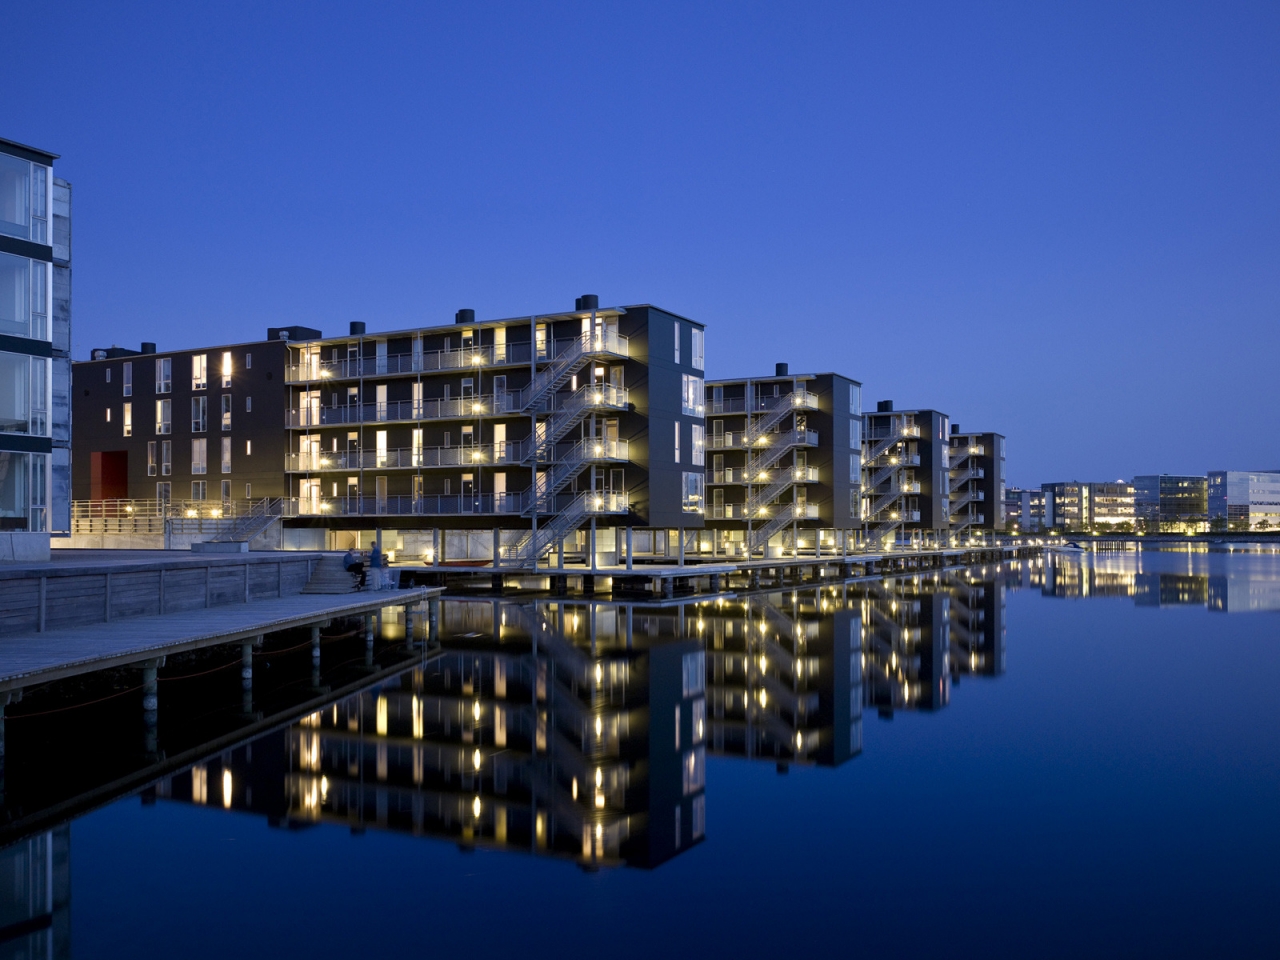 Teglvrkshavnen Block in Copenhagen for 1280 x 960 resolution